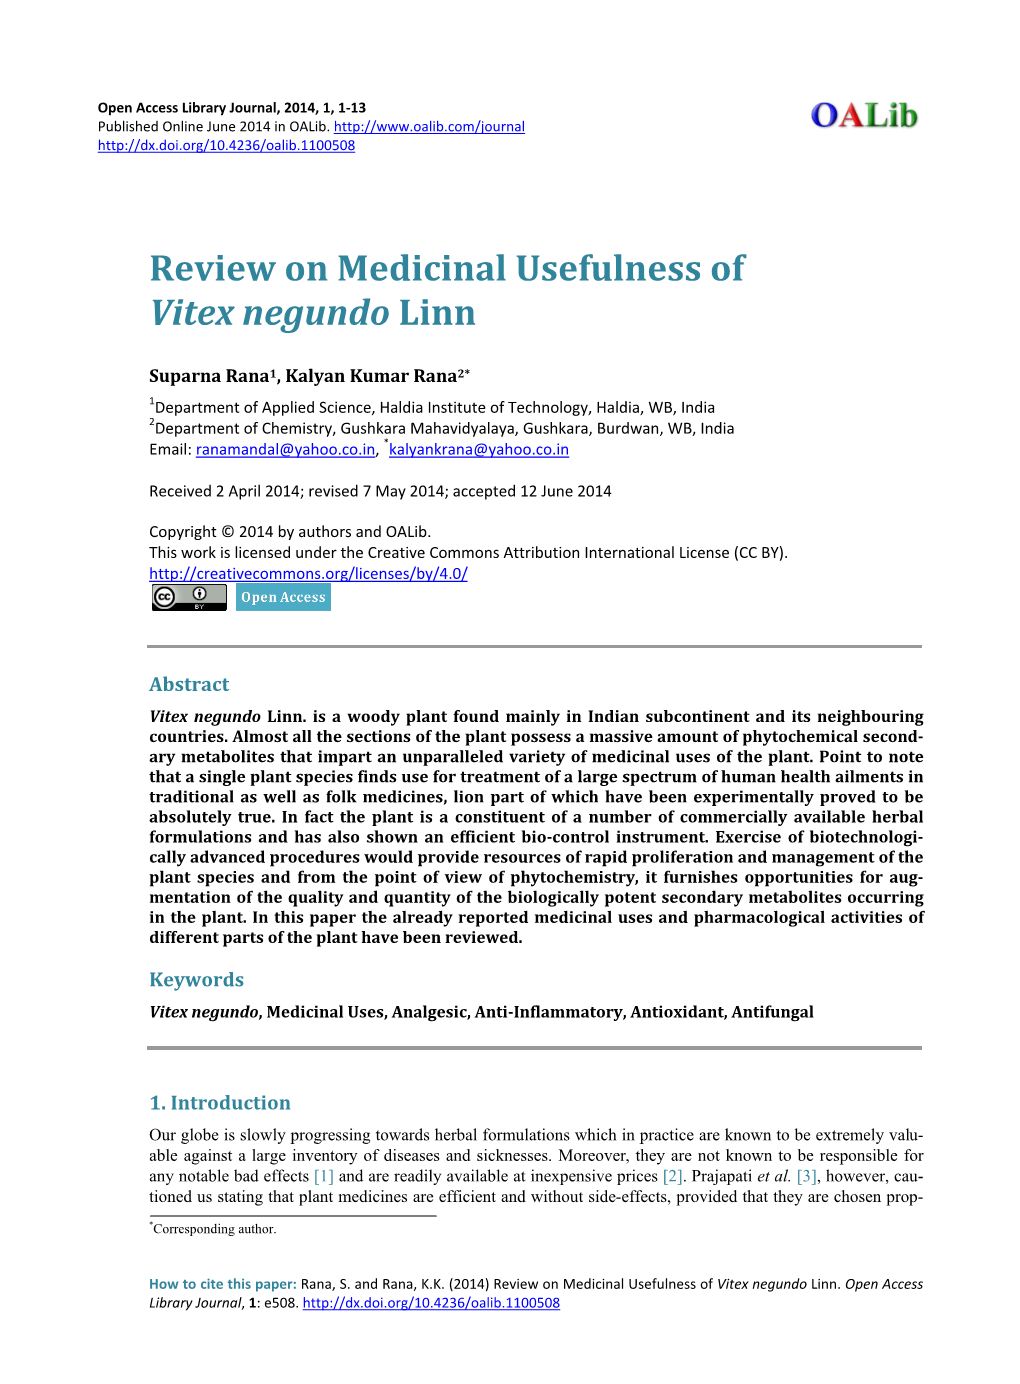 Review on Medicinal Usefulness of Vitex Negundo Linn